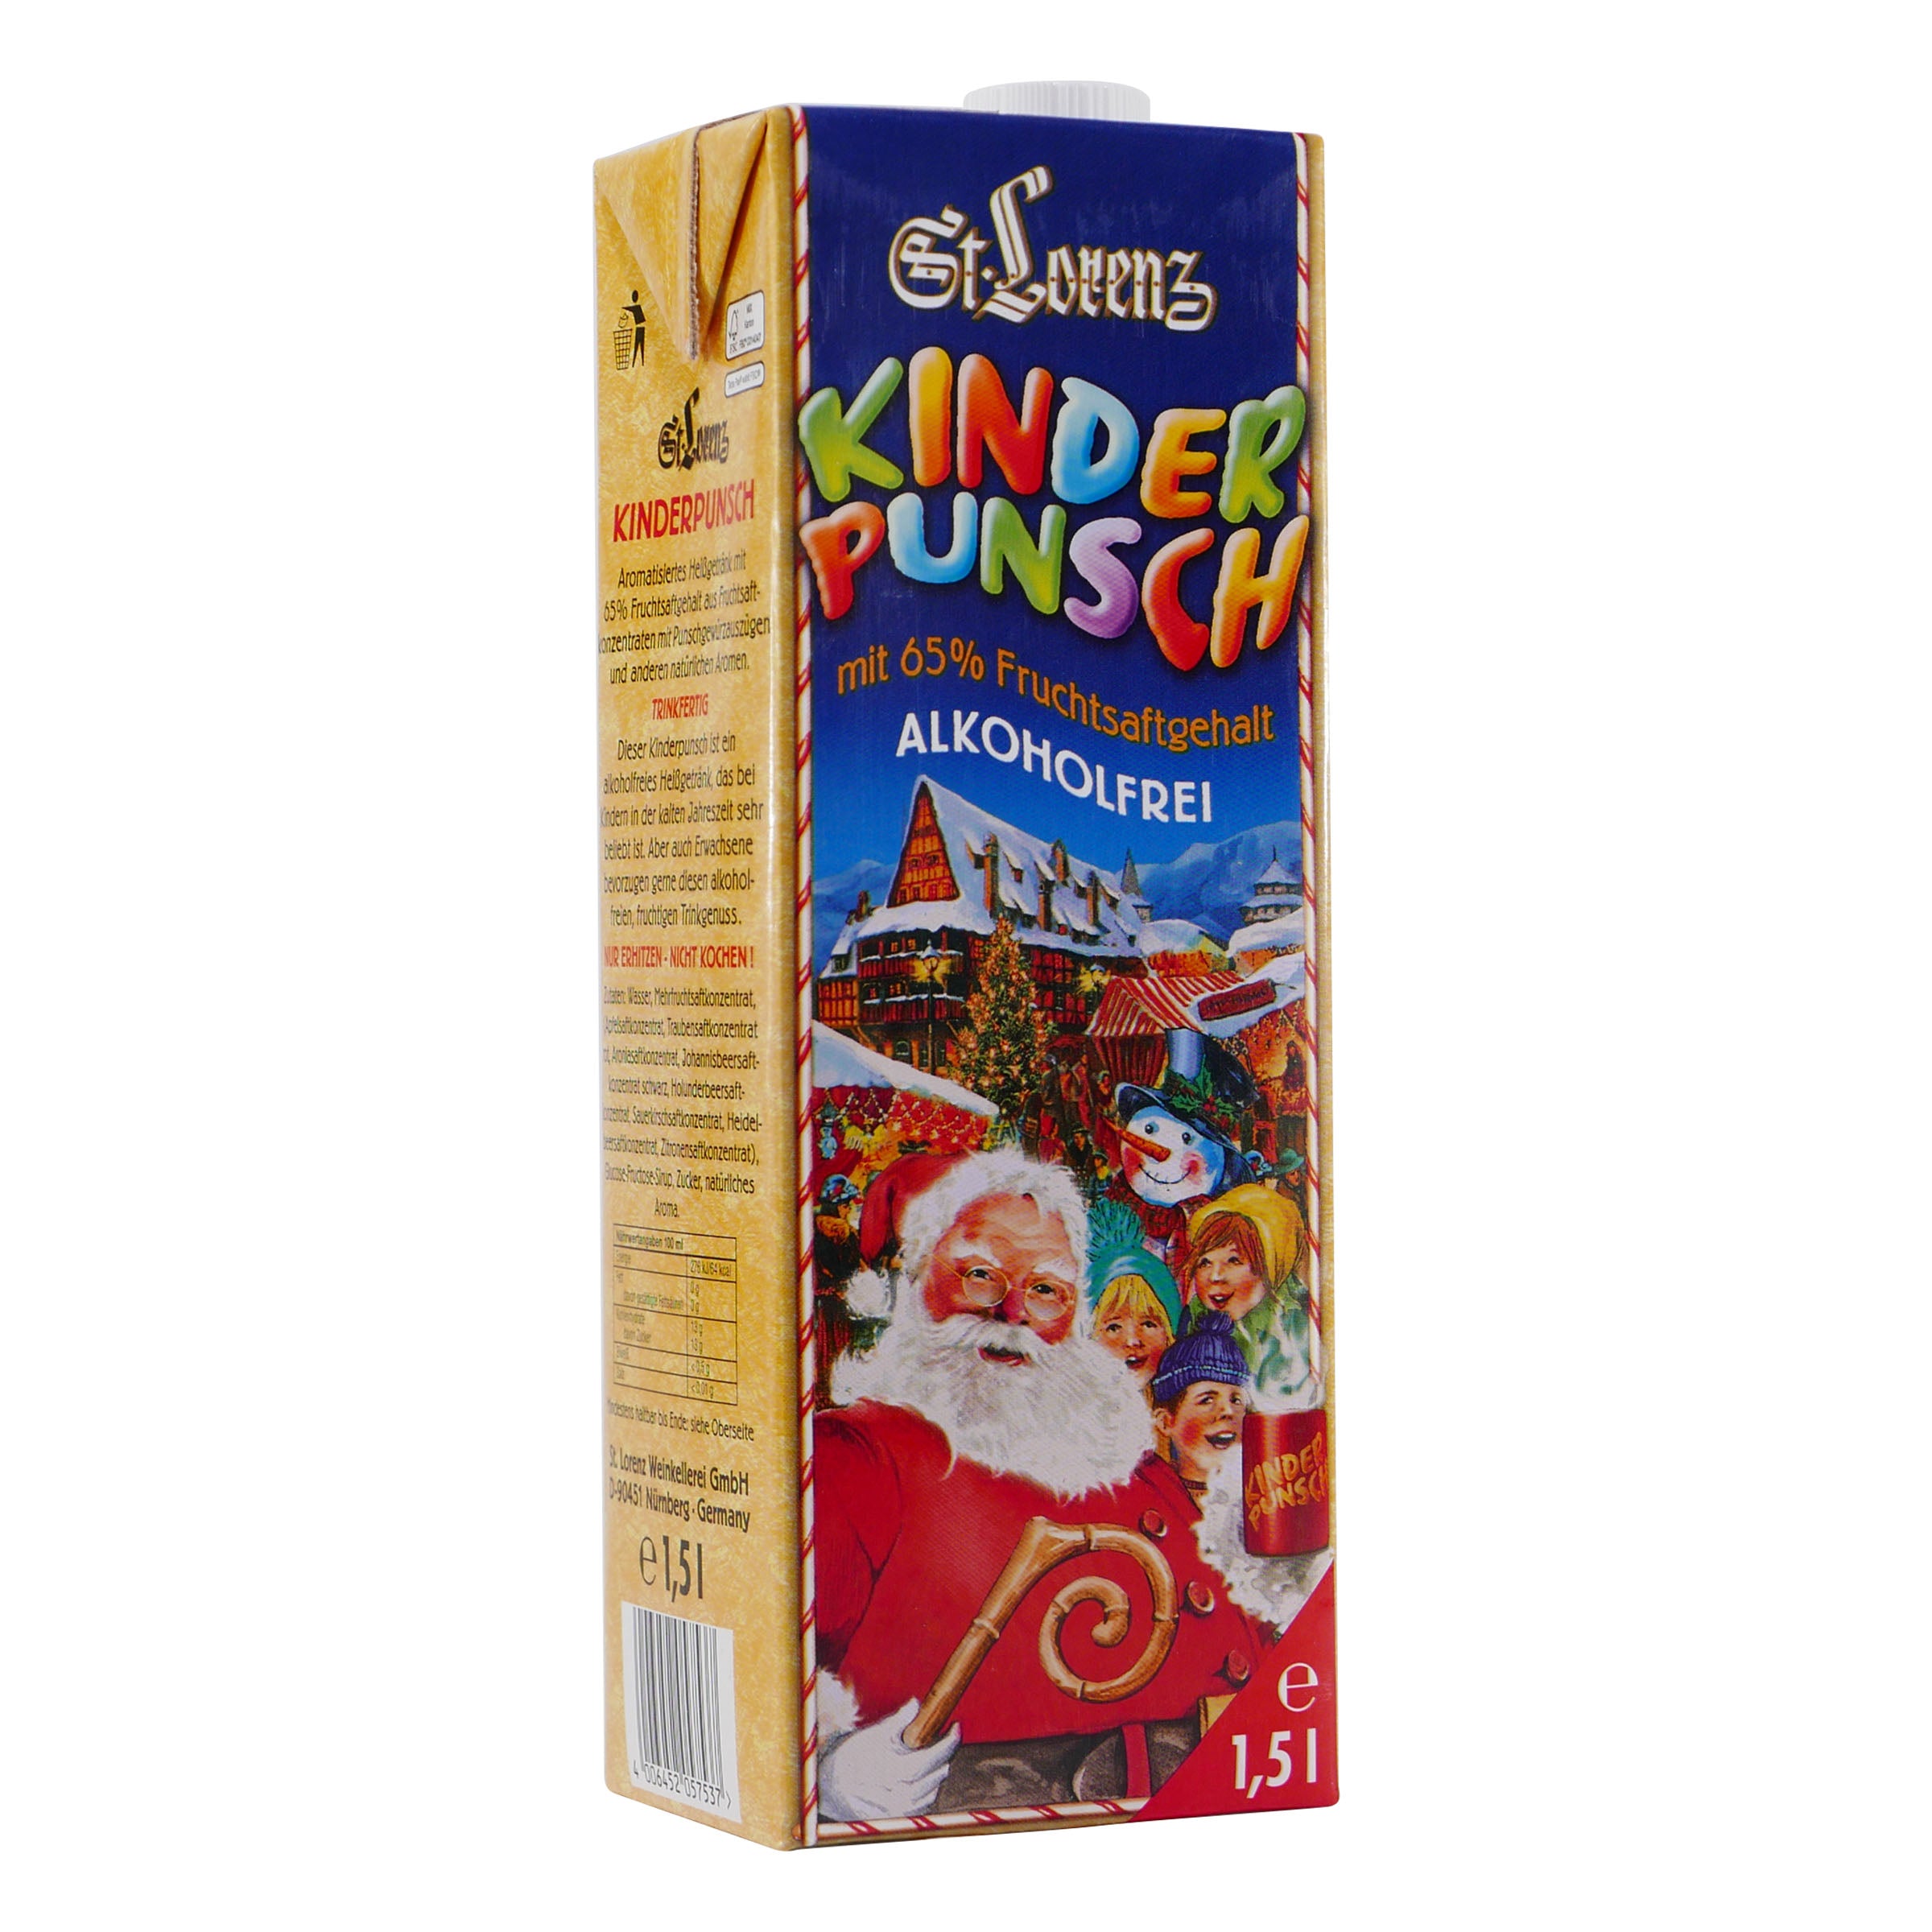 St. Lorenz Kinder-Punsch -alkoholfrei- (8 x 1,5L)